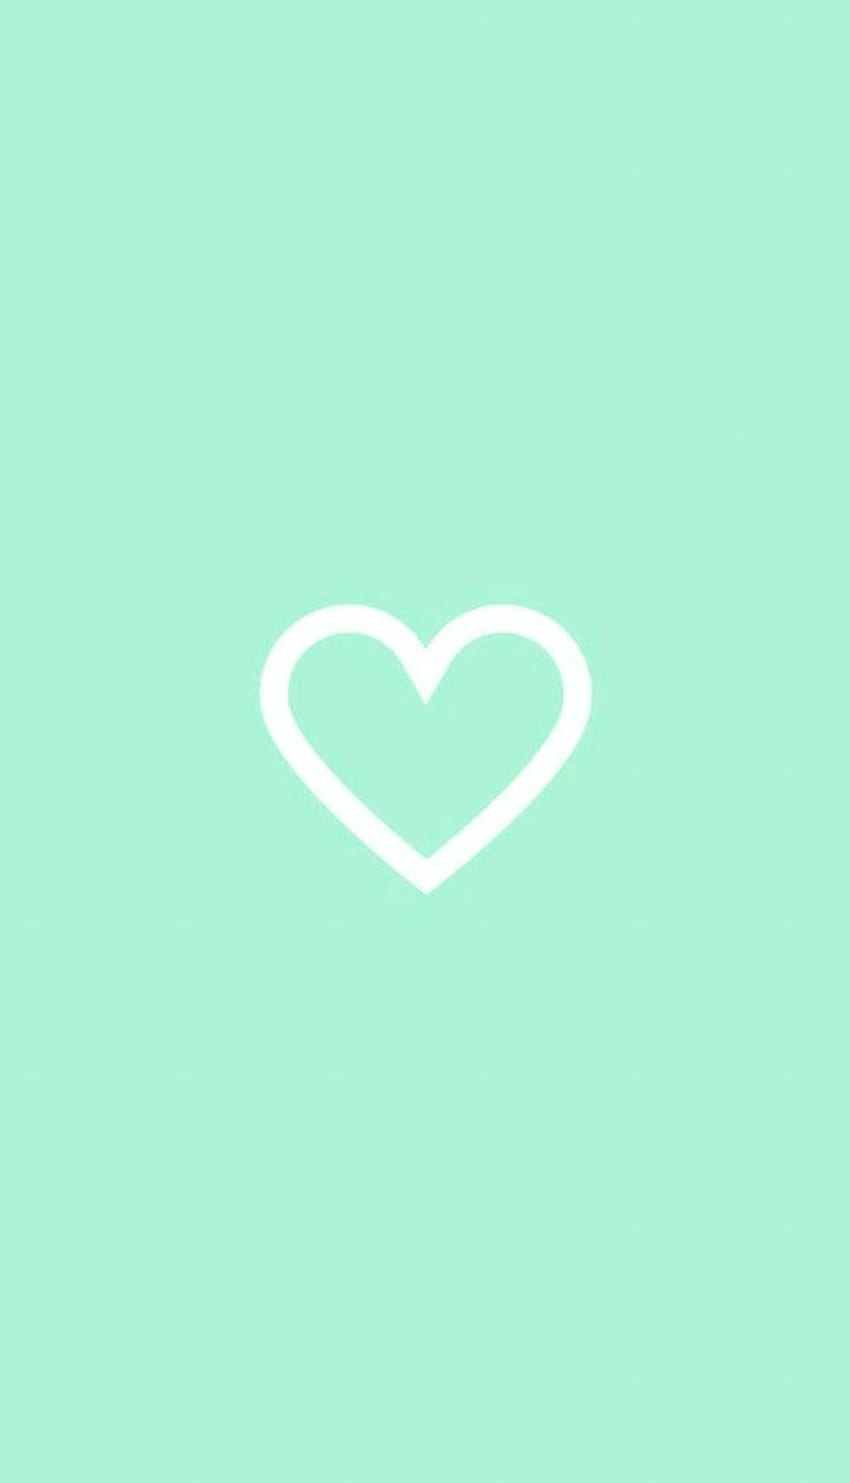 Estética verde menta, iPhone simple, Mint Green Hearts fondo de pantalla del teléfono